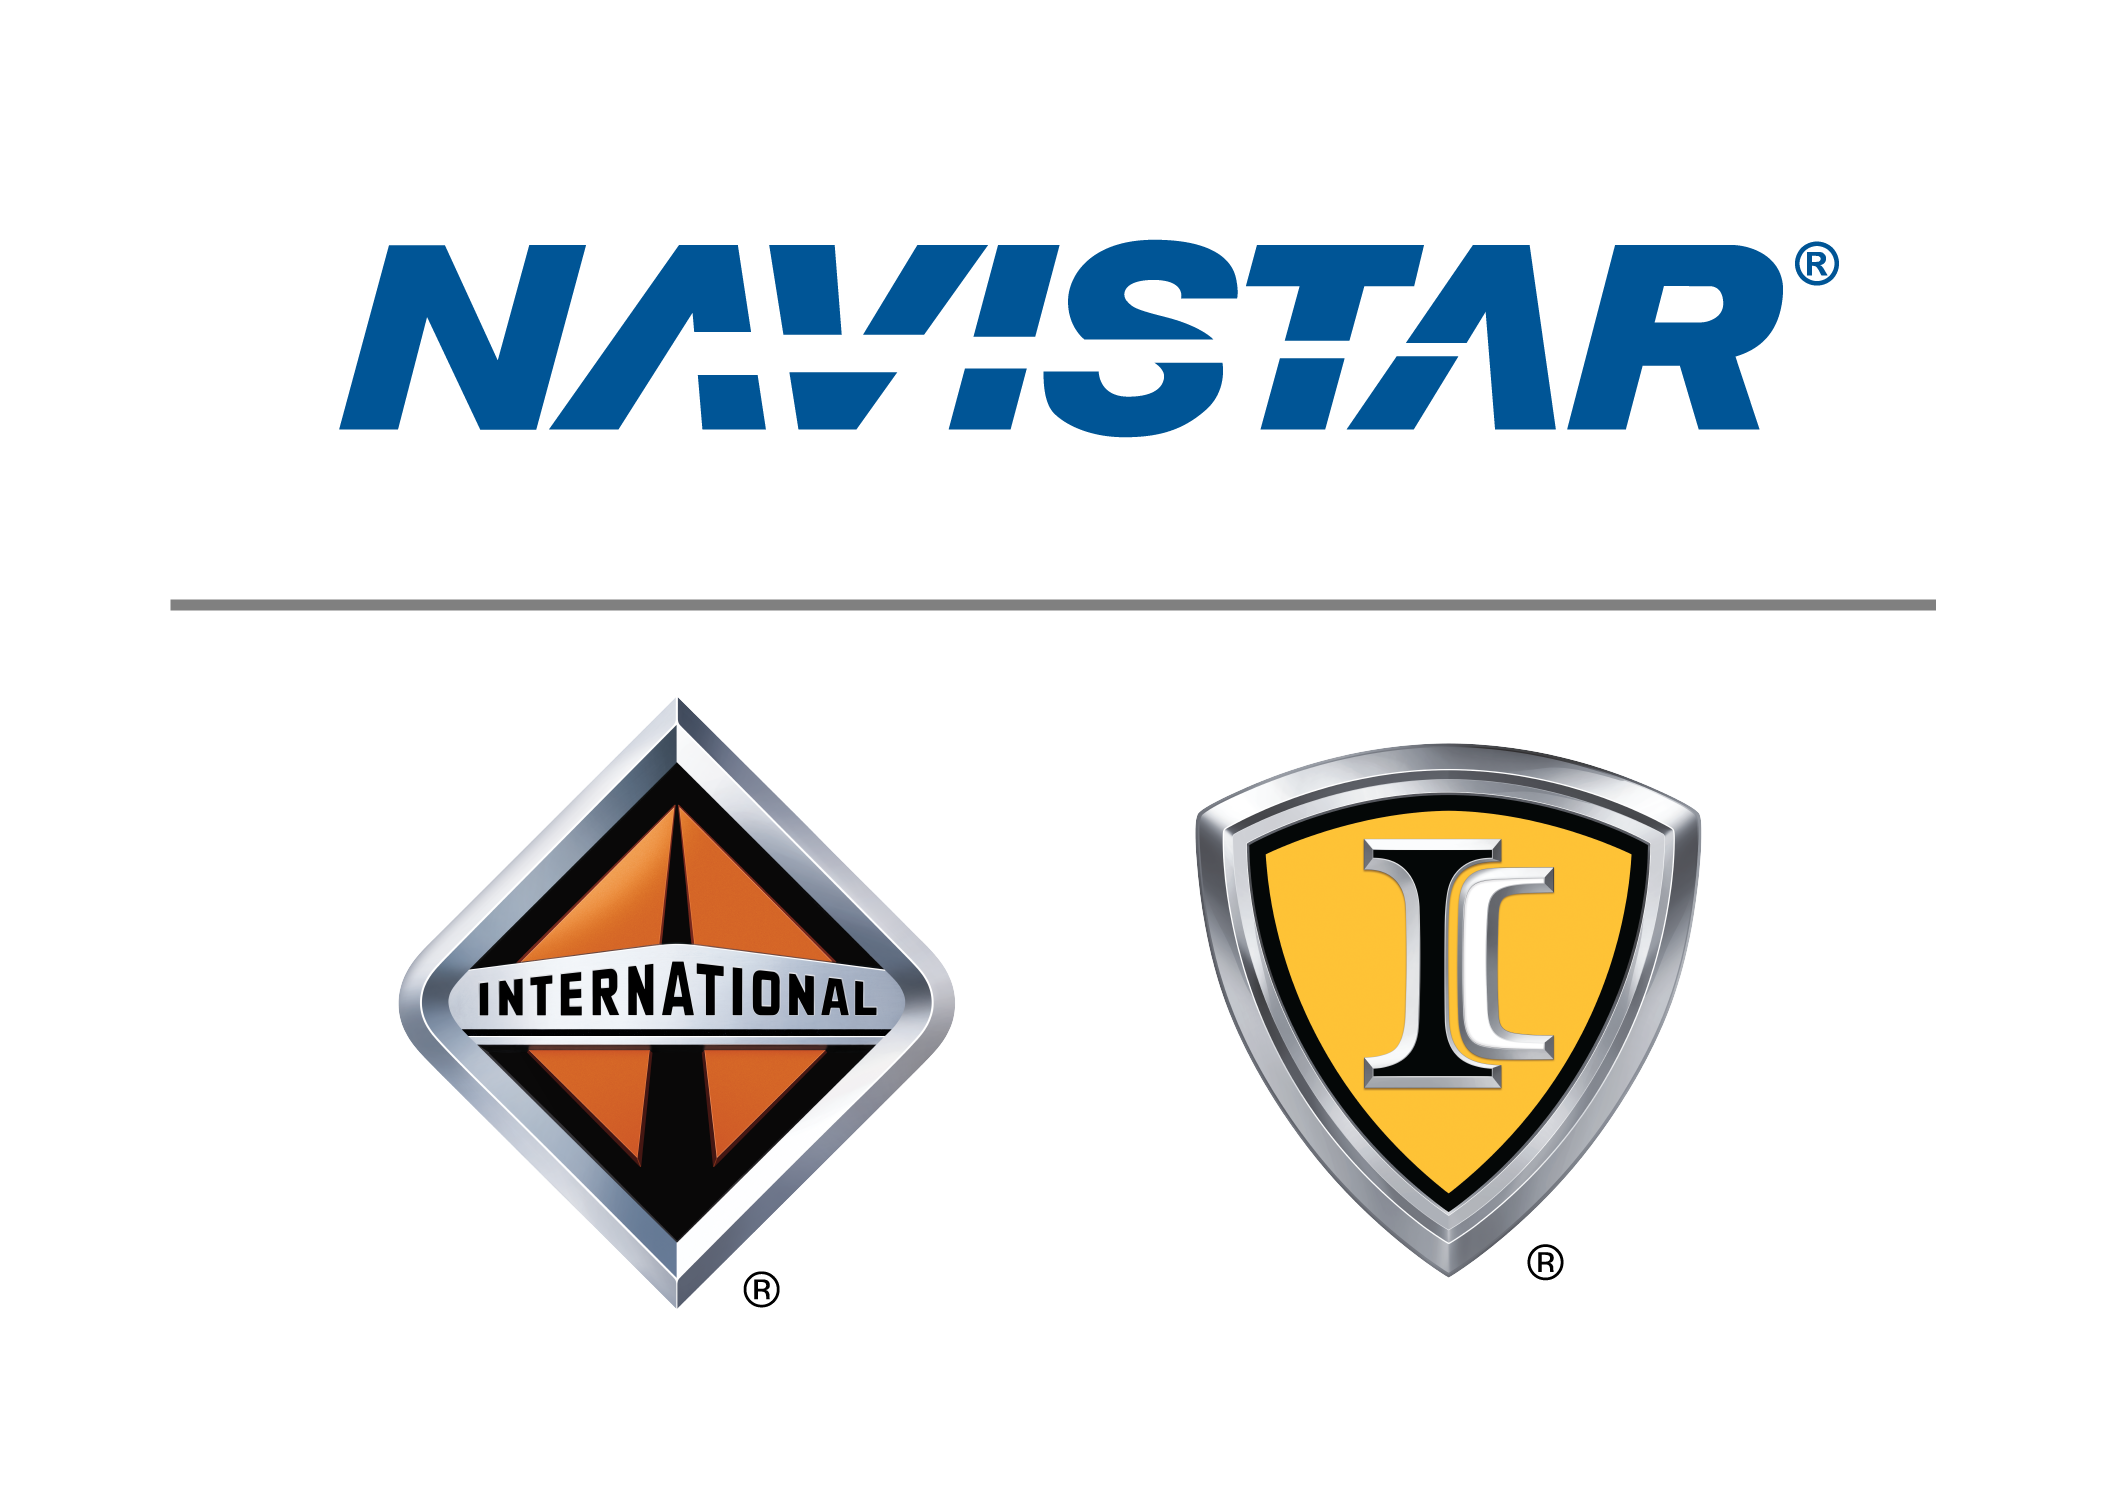 International:Navistar